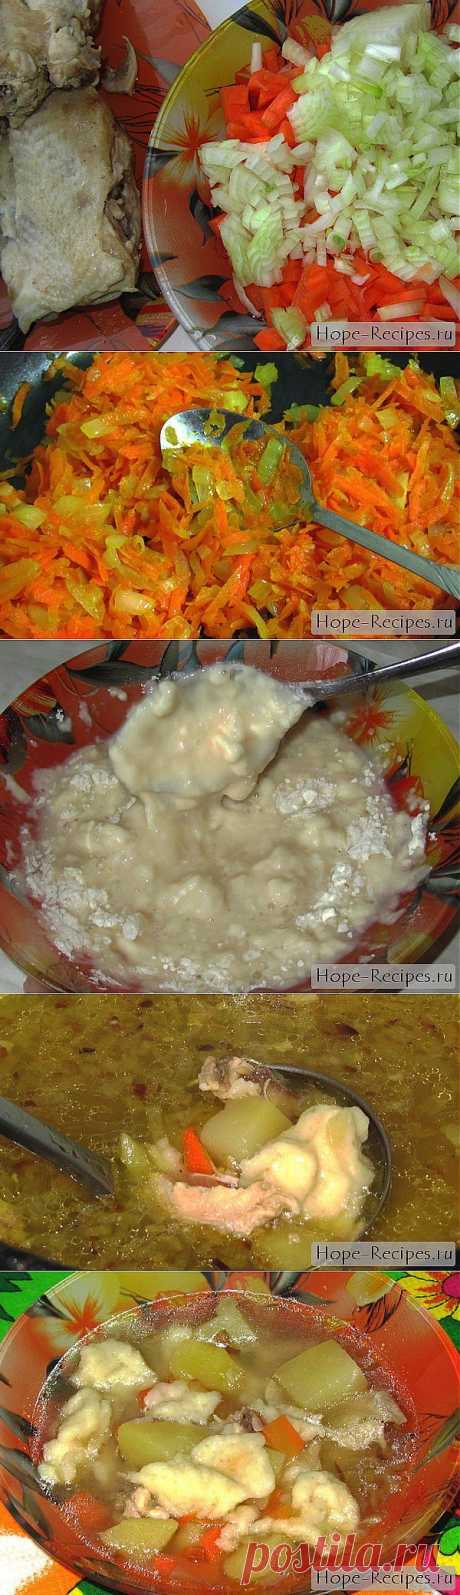 Суп с клецками © Кулинарный блог #Рецепты Надежды